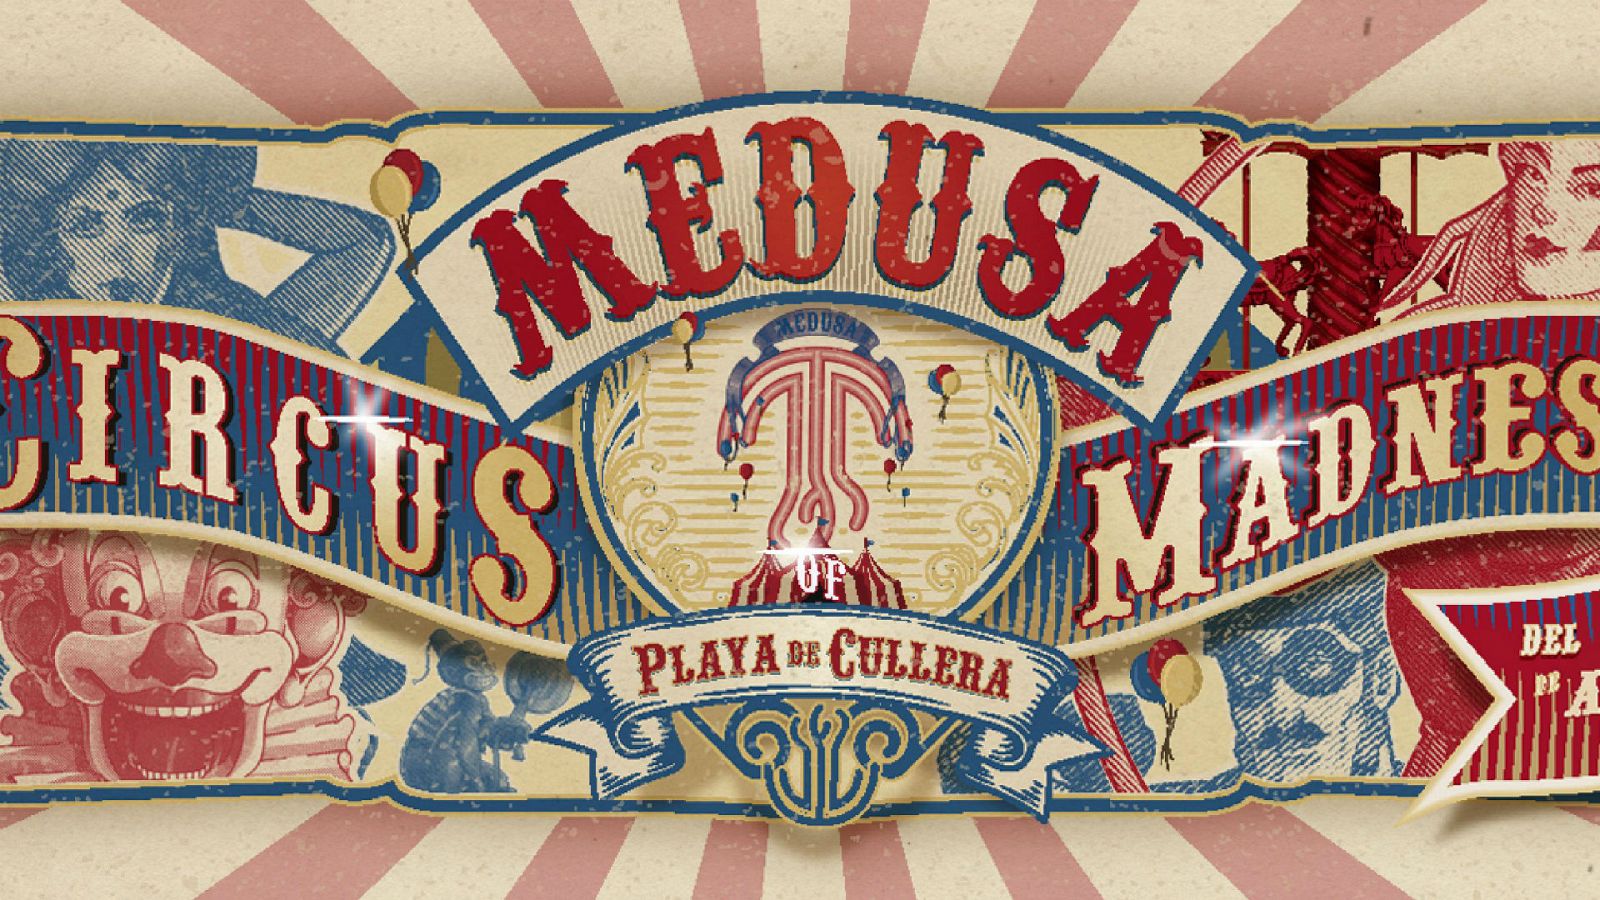 Medusa Festival